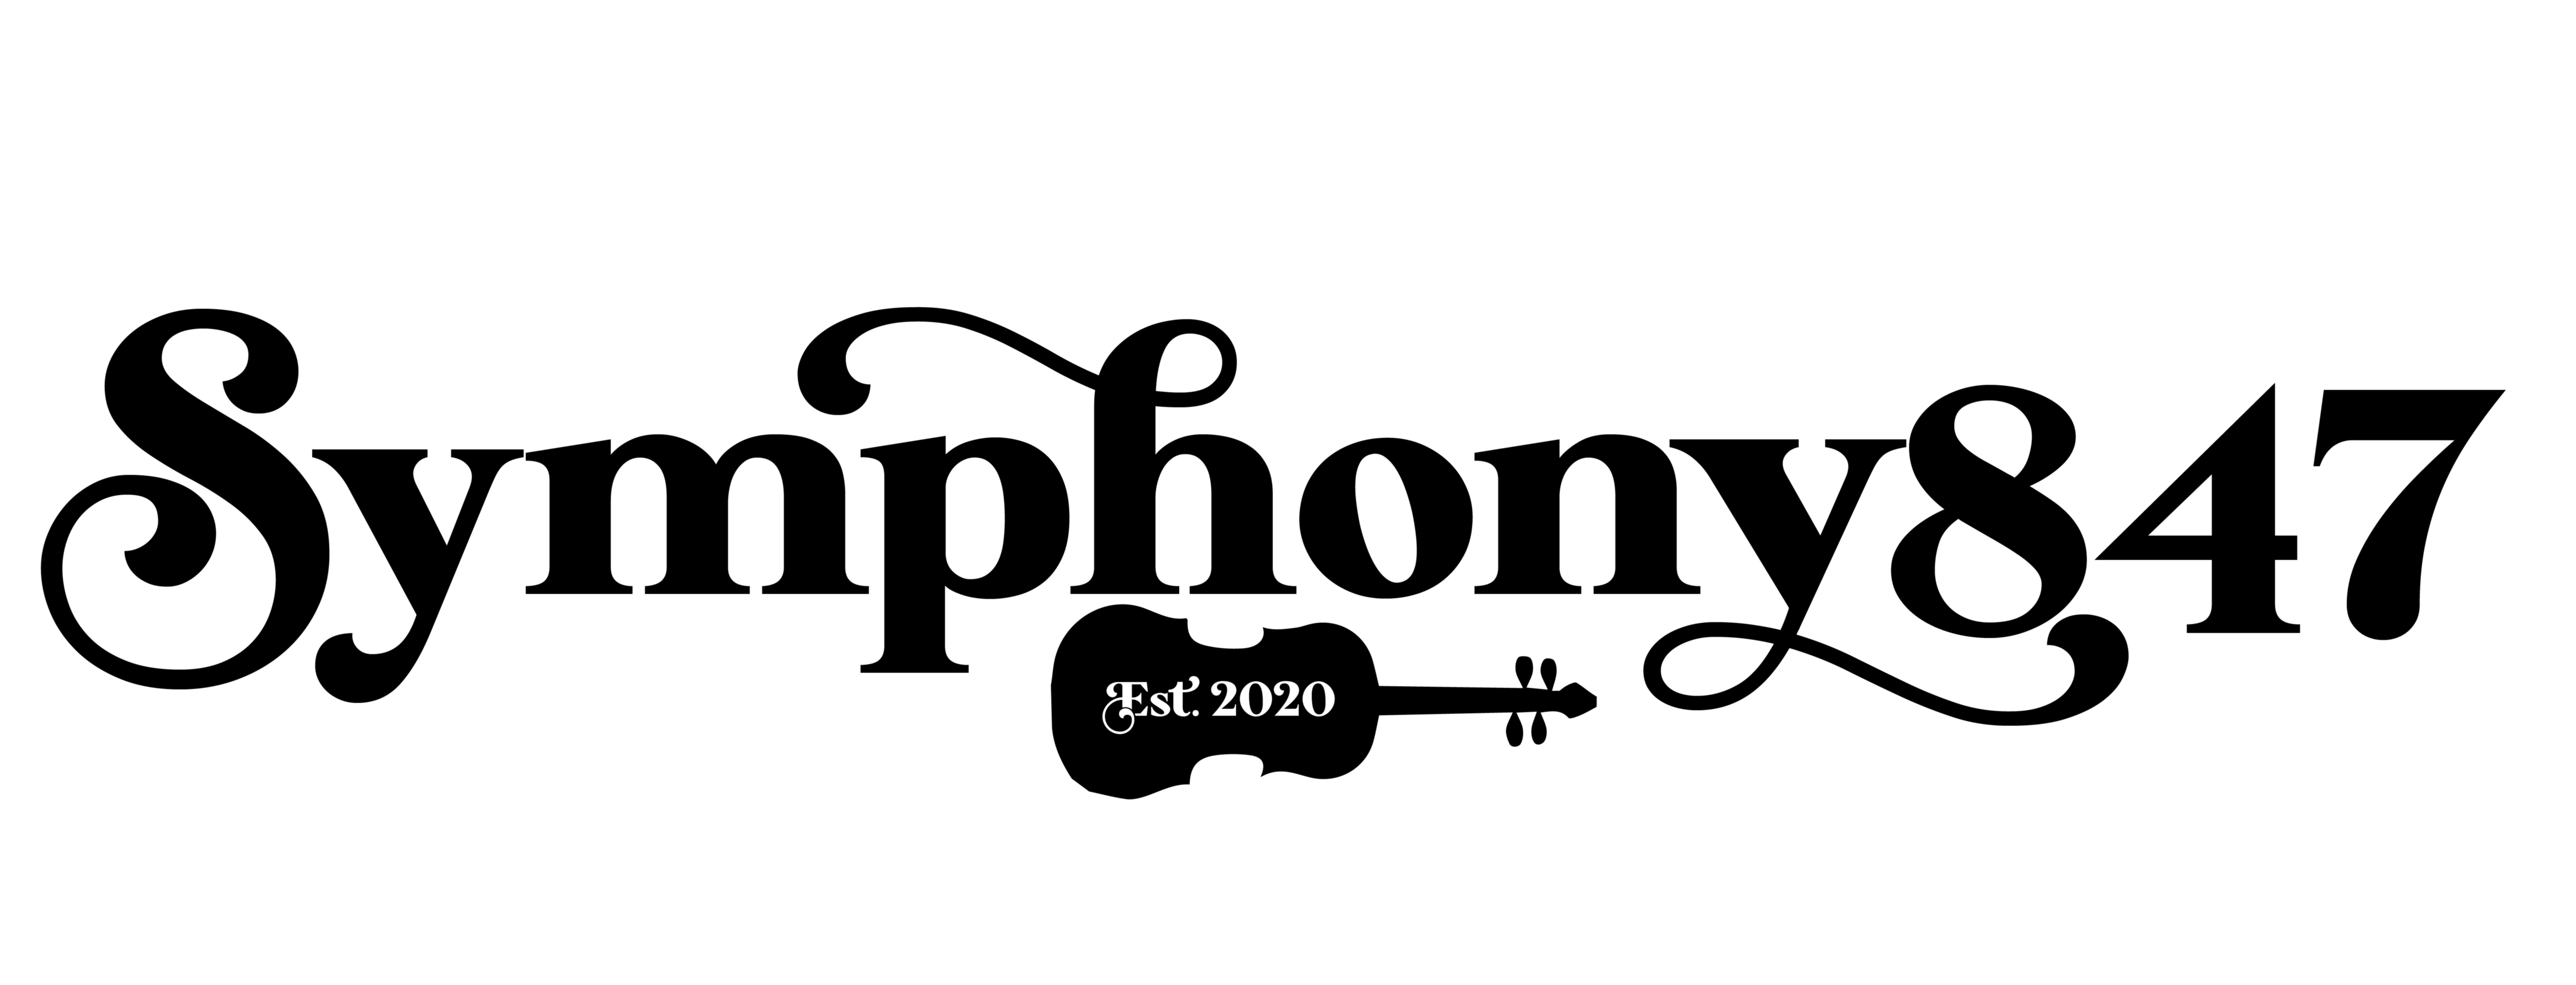 Symphony847 logo